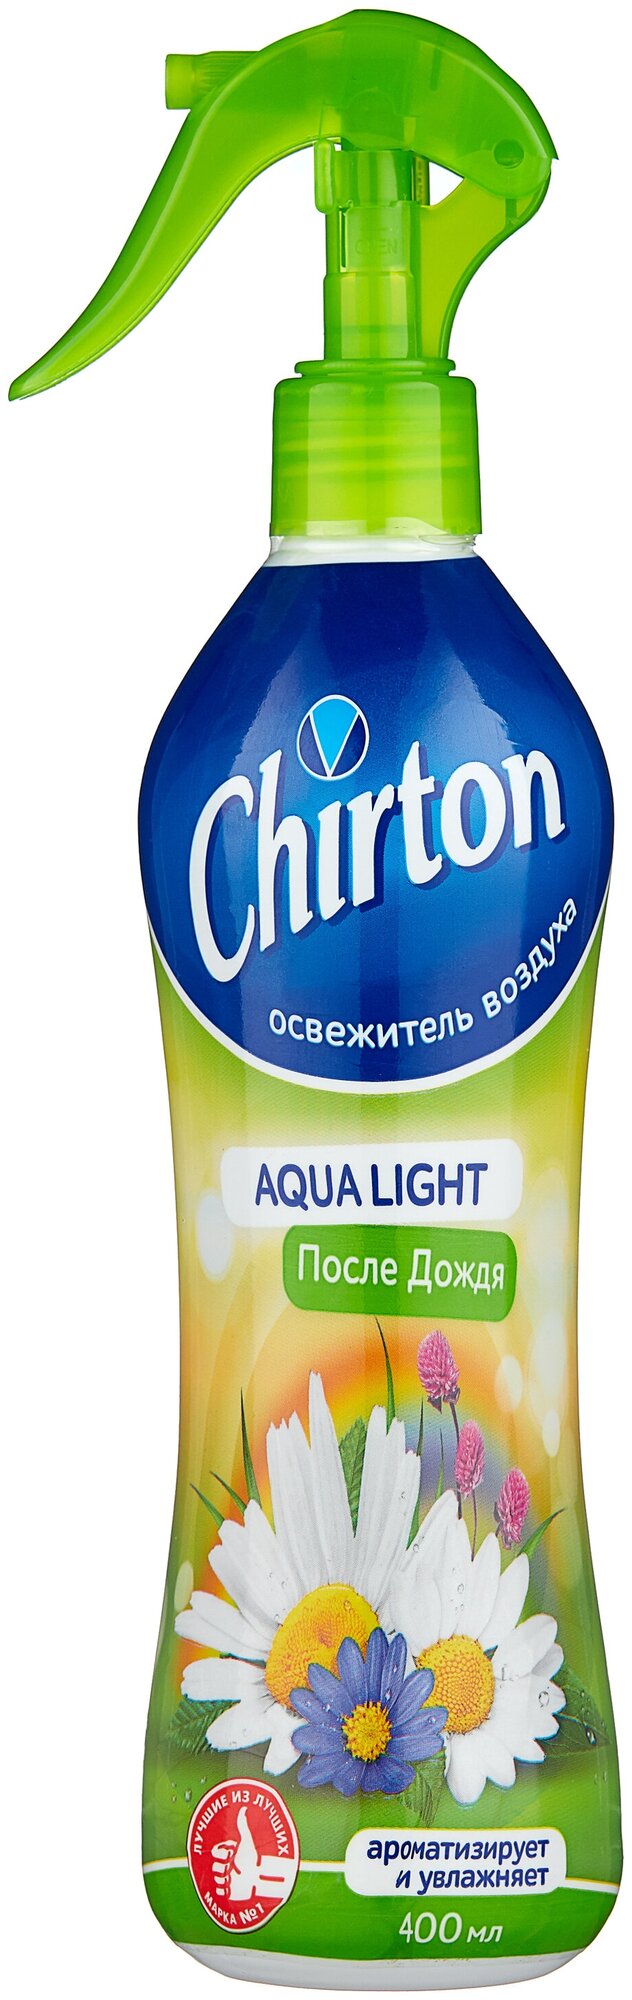 Chirton освежитель воздуха Aqua Light После дождя, 400 мл 1 шт.